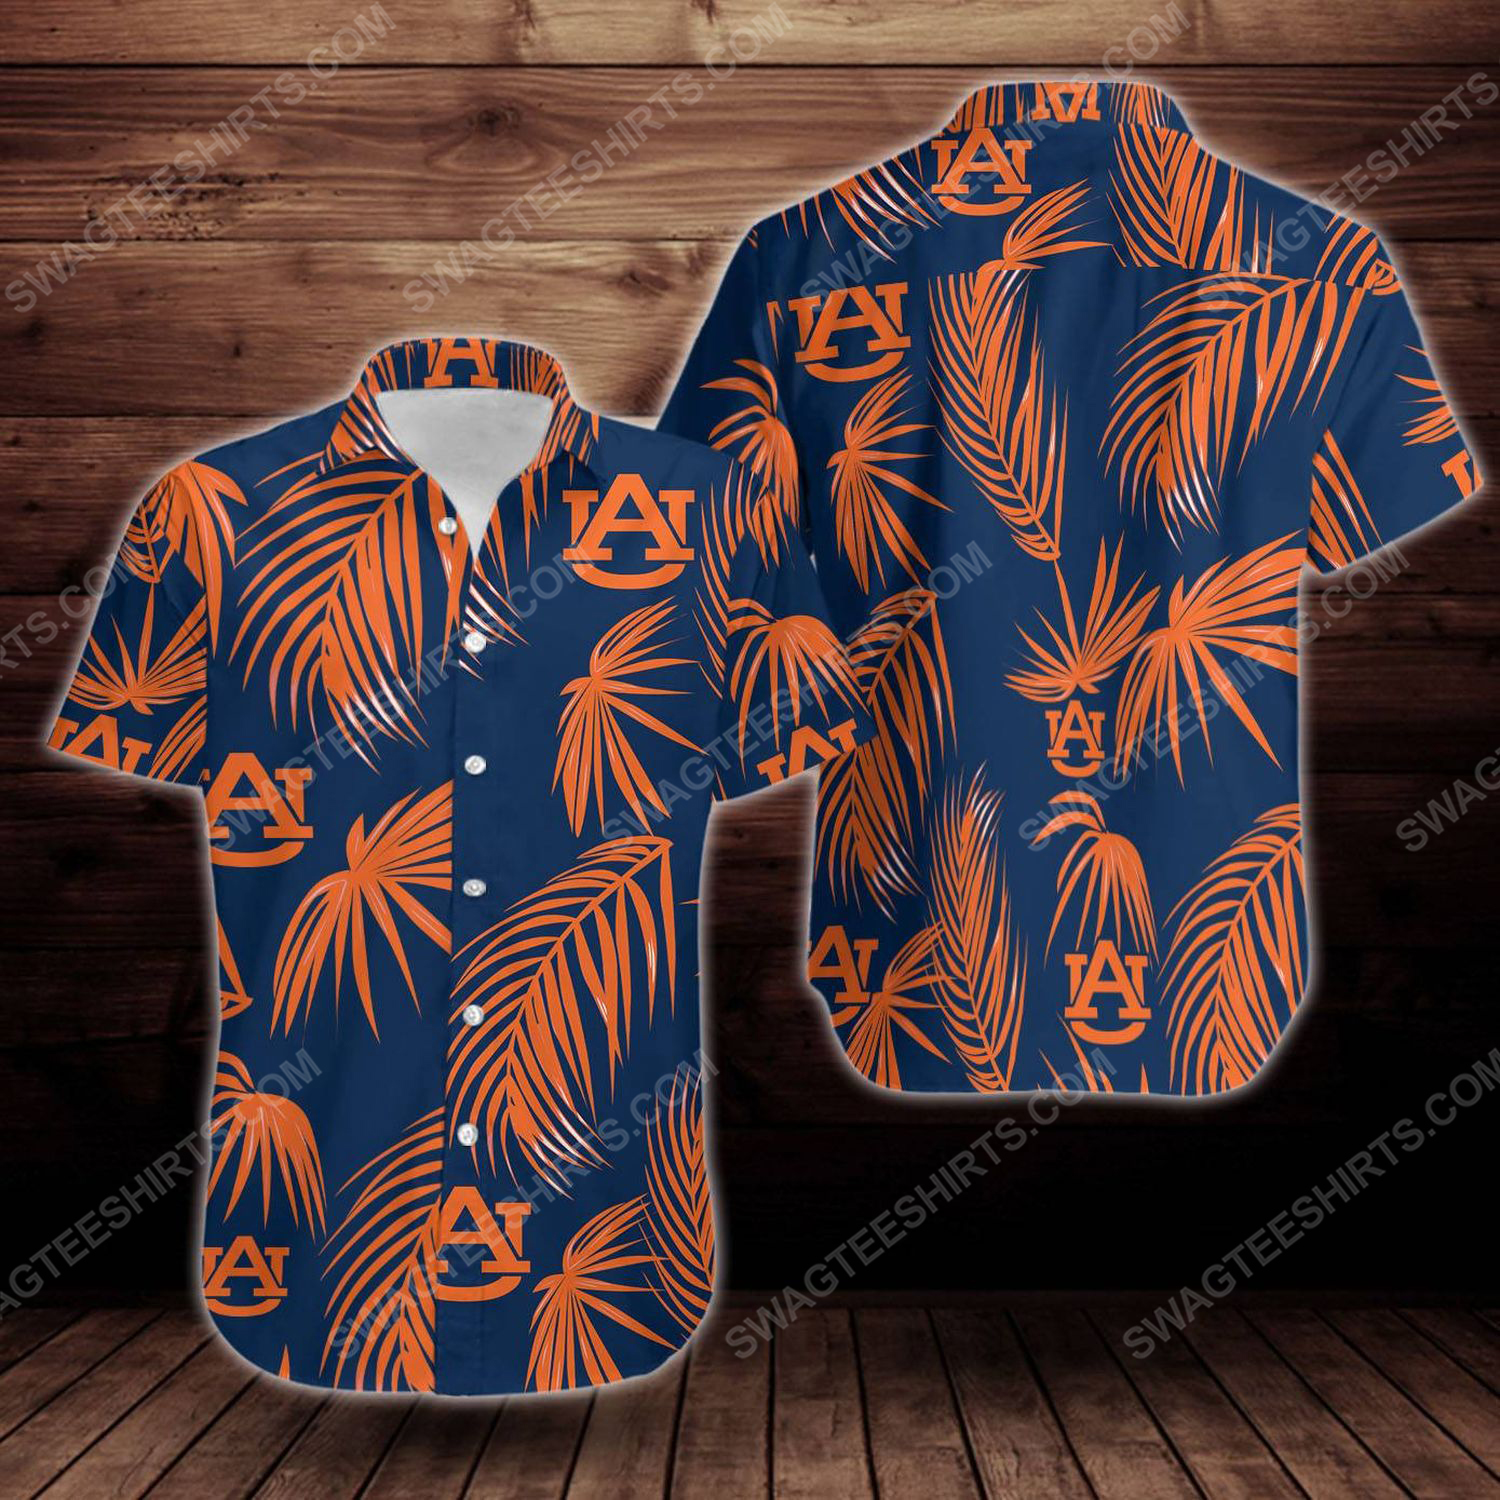 Tropical auburn tigers short sleeve hawaiian shirt 1